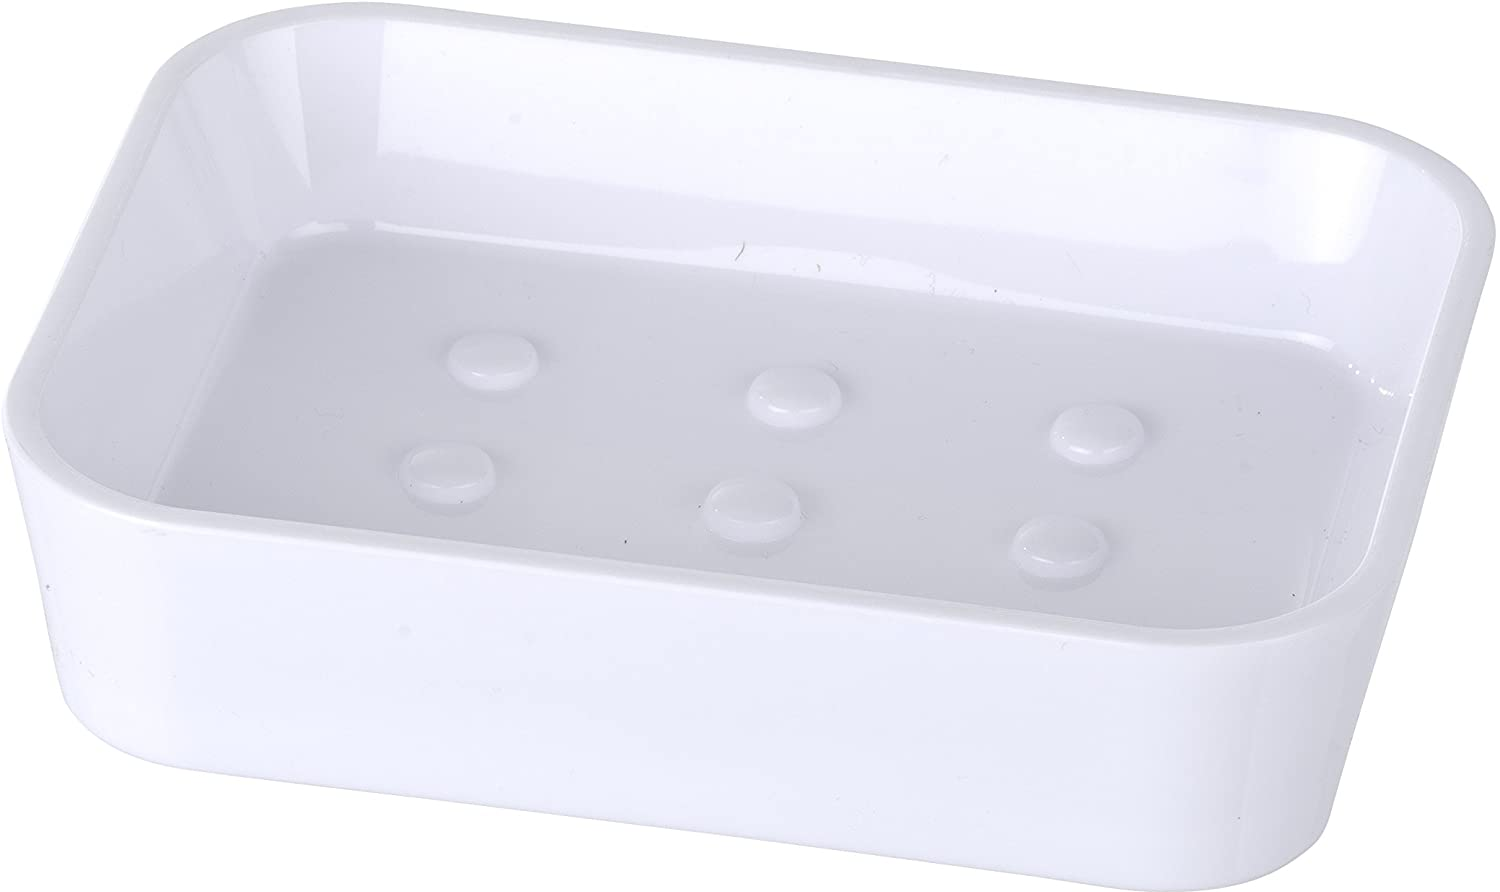 Seifenablage Candy White - Seifenschale, Polystyrol, 12 x 3 x 9 cm, Weiß